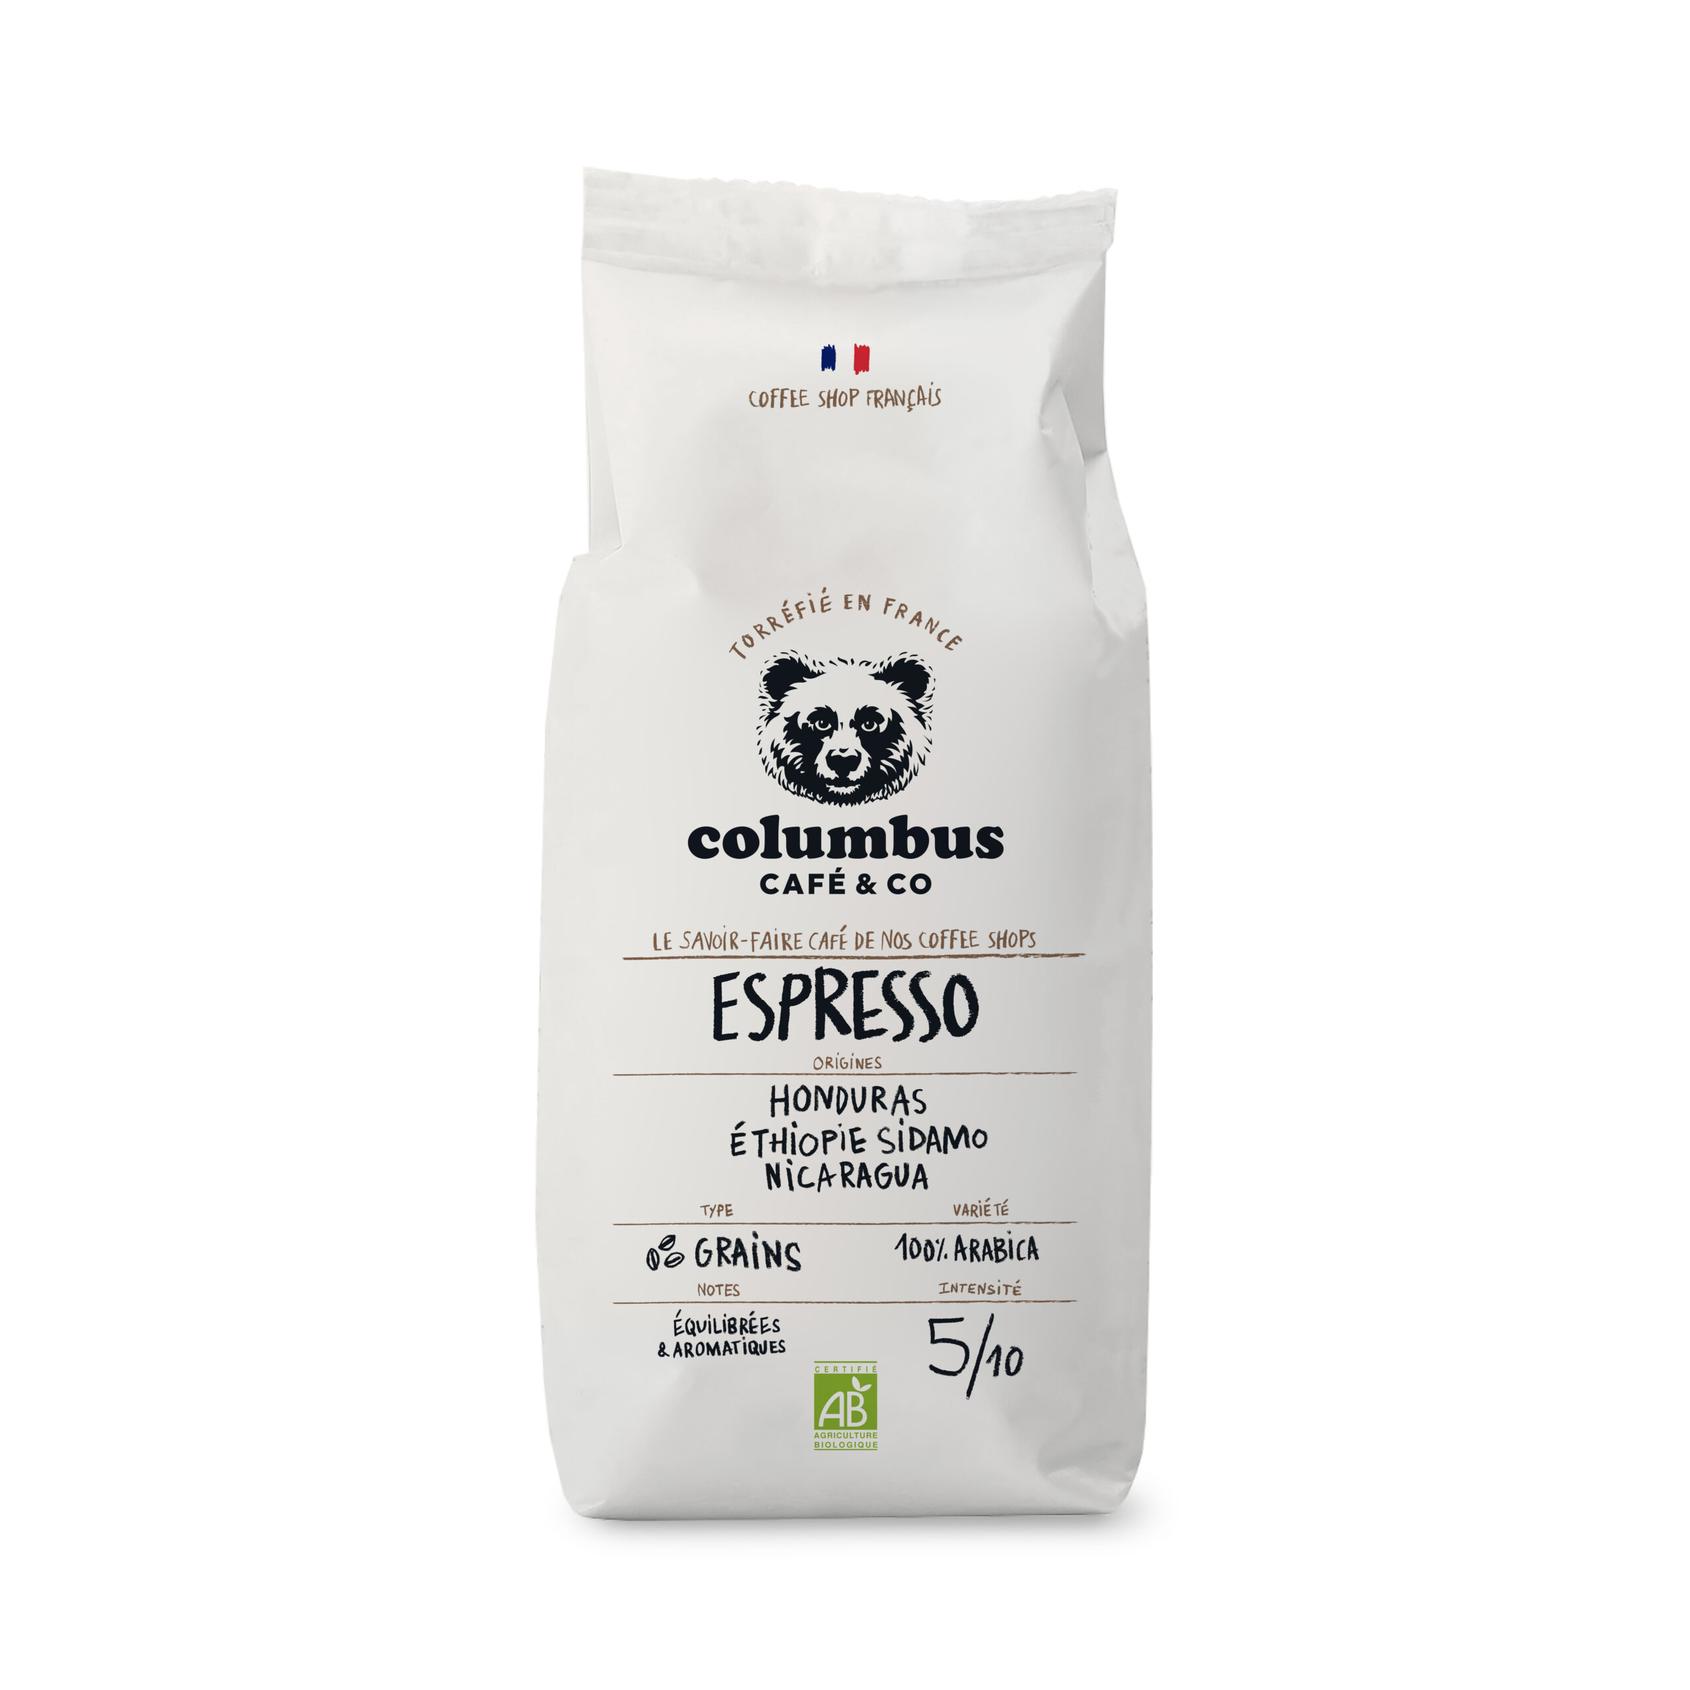 Café Grain - Espresso Barista Blend 1 KG offre à 18,9€ sur Columbus Café